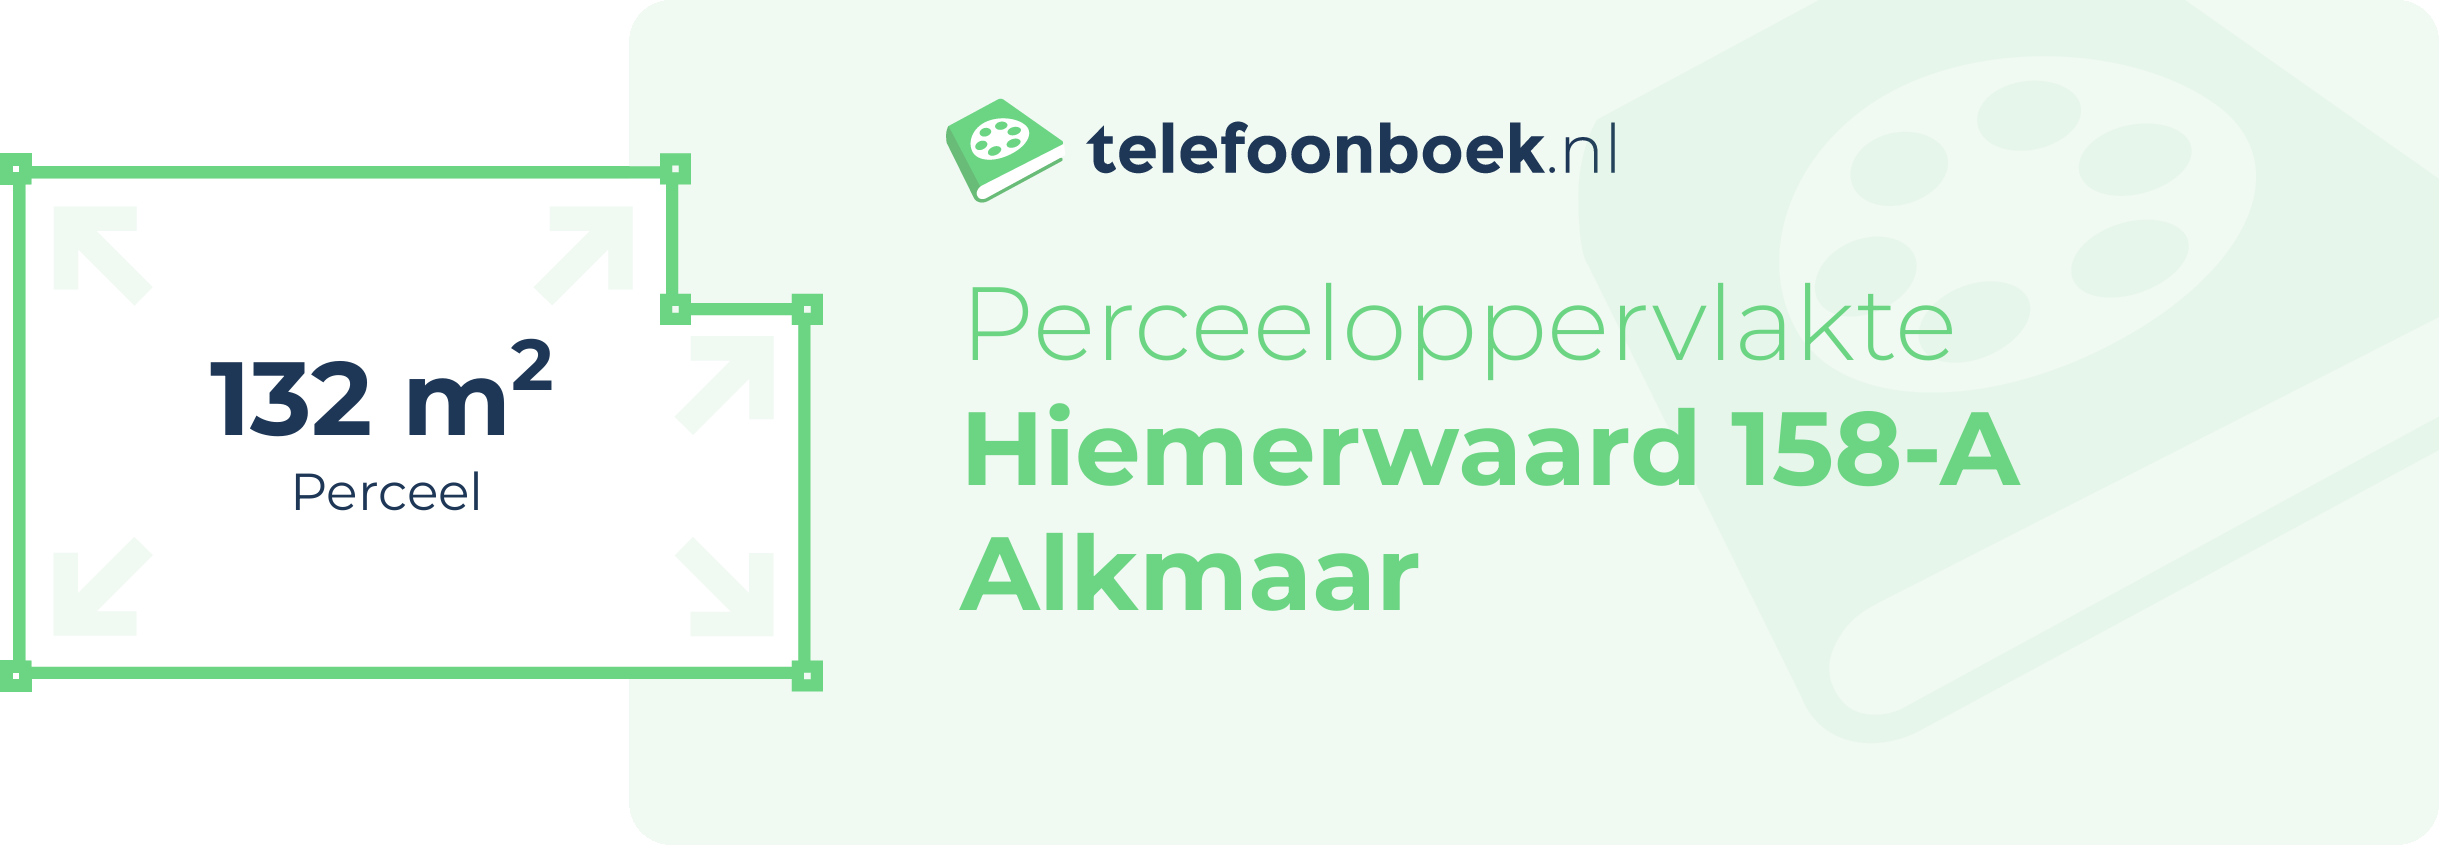 Perceeloppervlakte Hiemerwaard 158-A Alkmaar